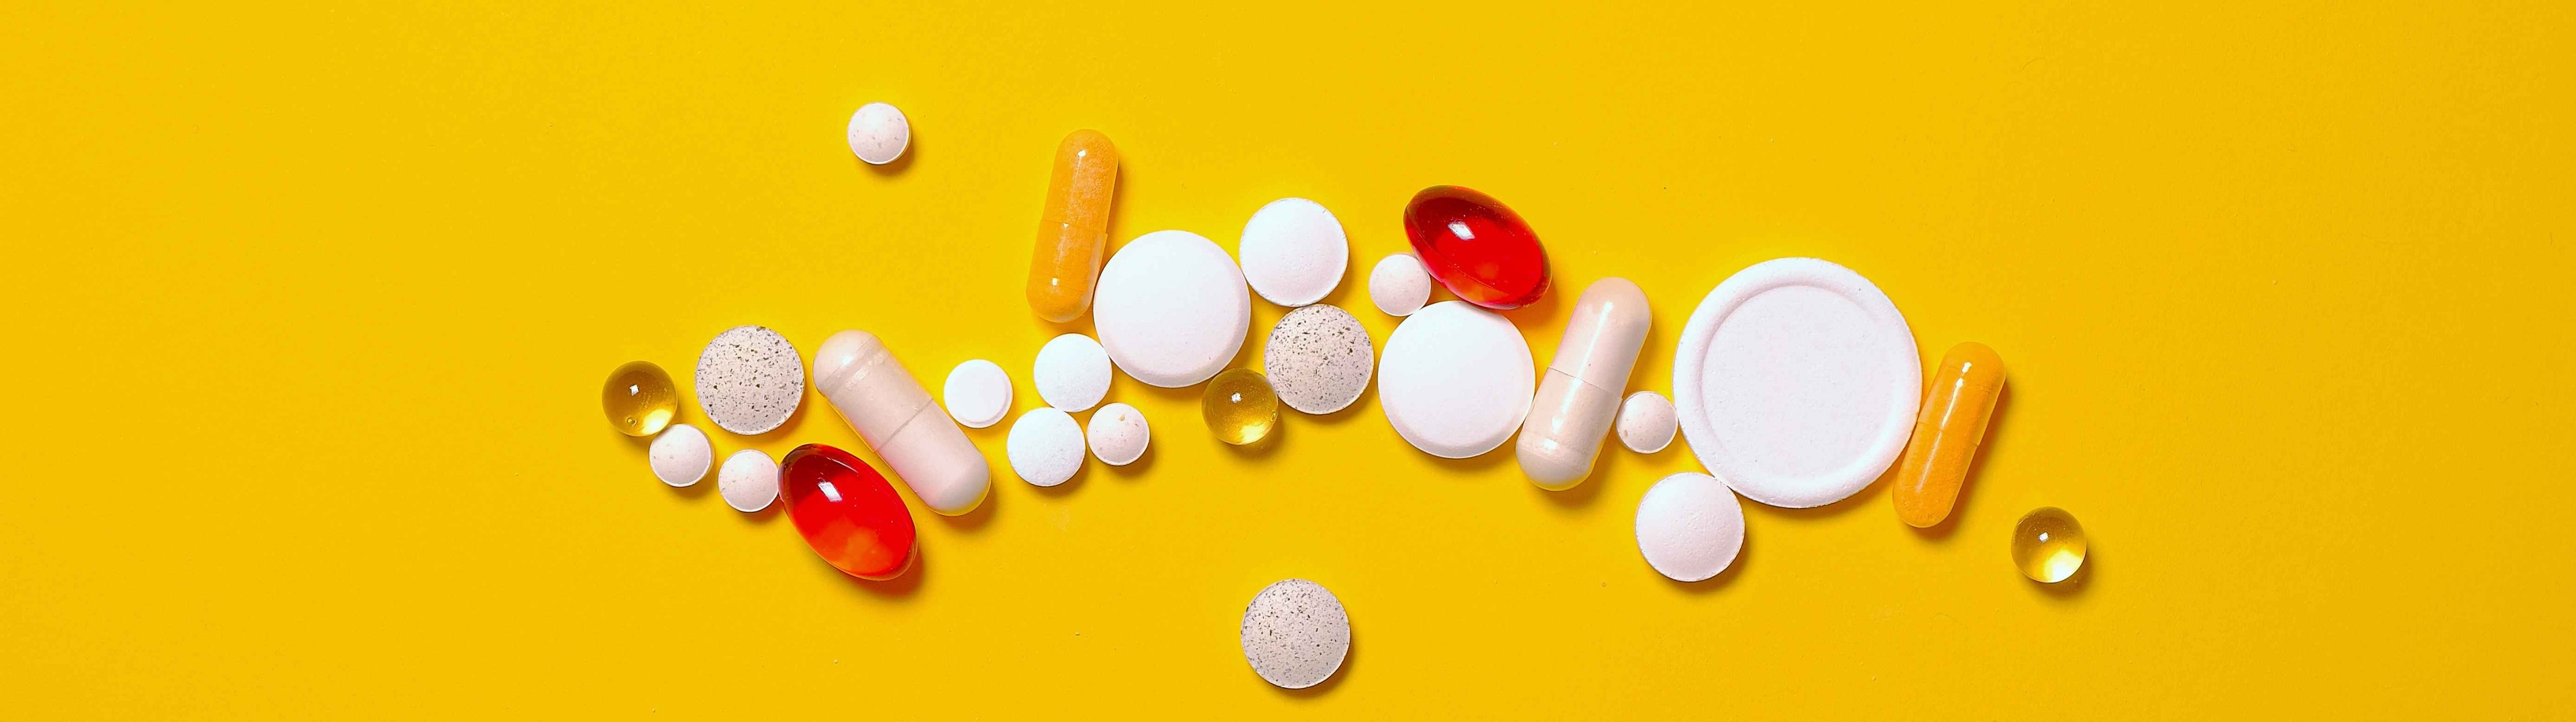 Farmaindustria propone medidas para acabar con el problema de acceso a nuevos medicamentos 